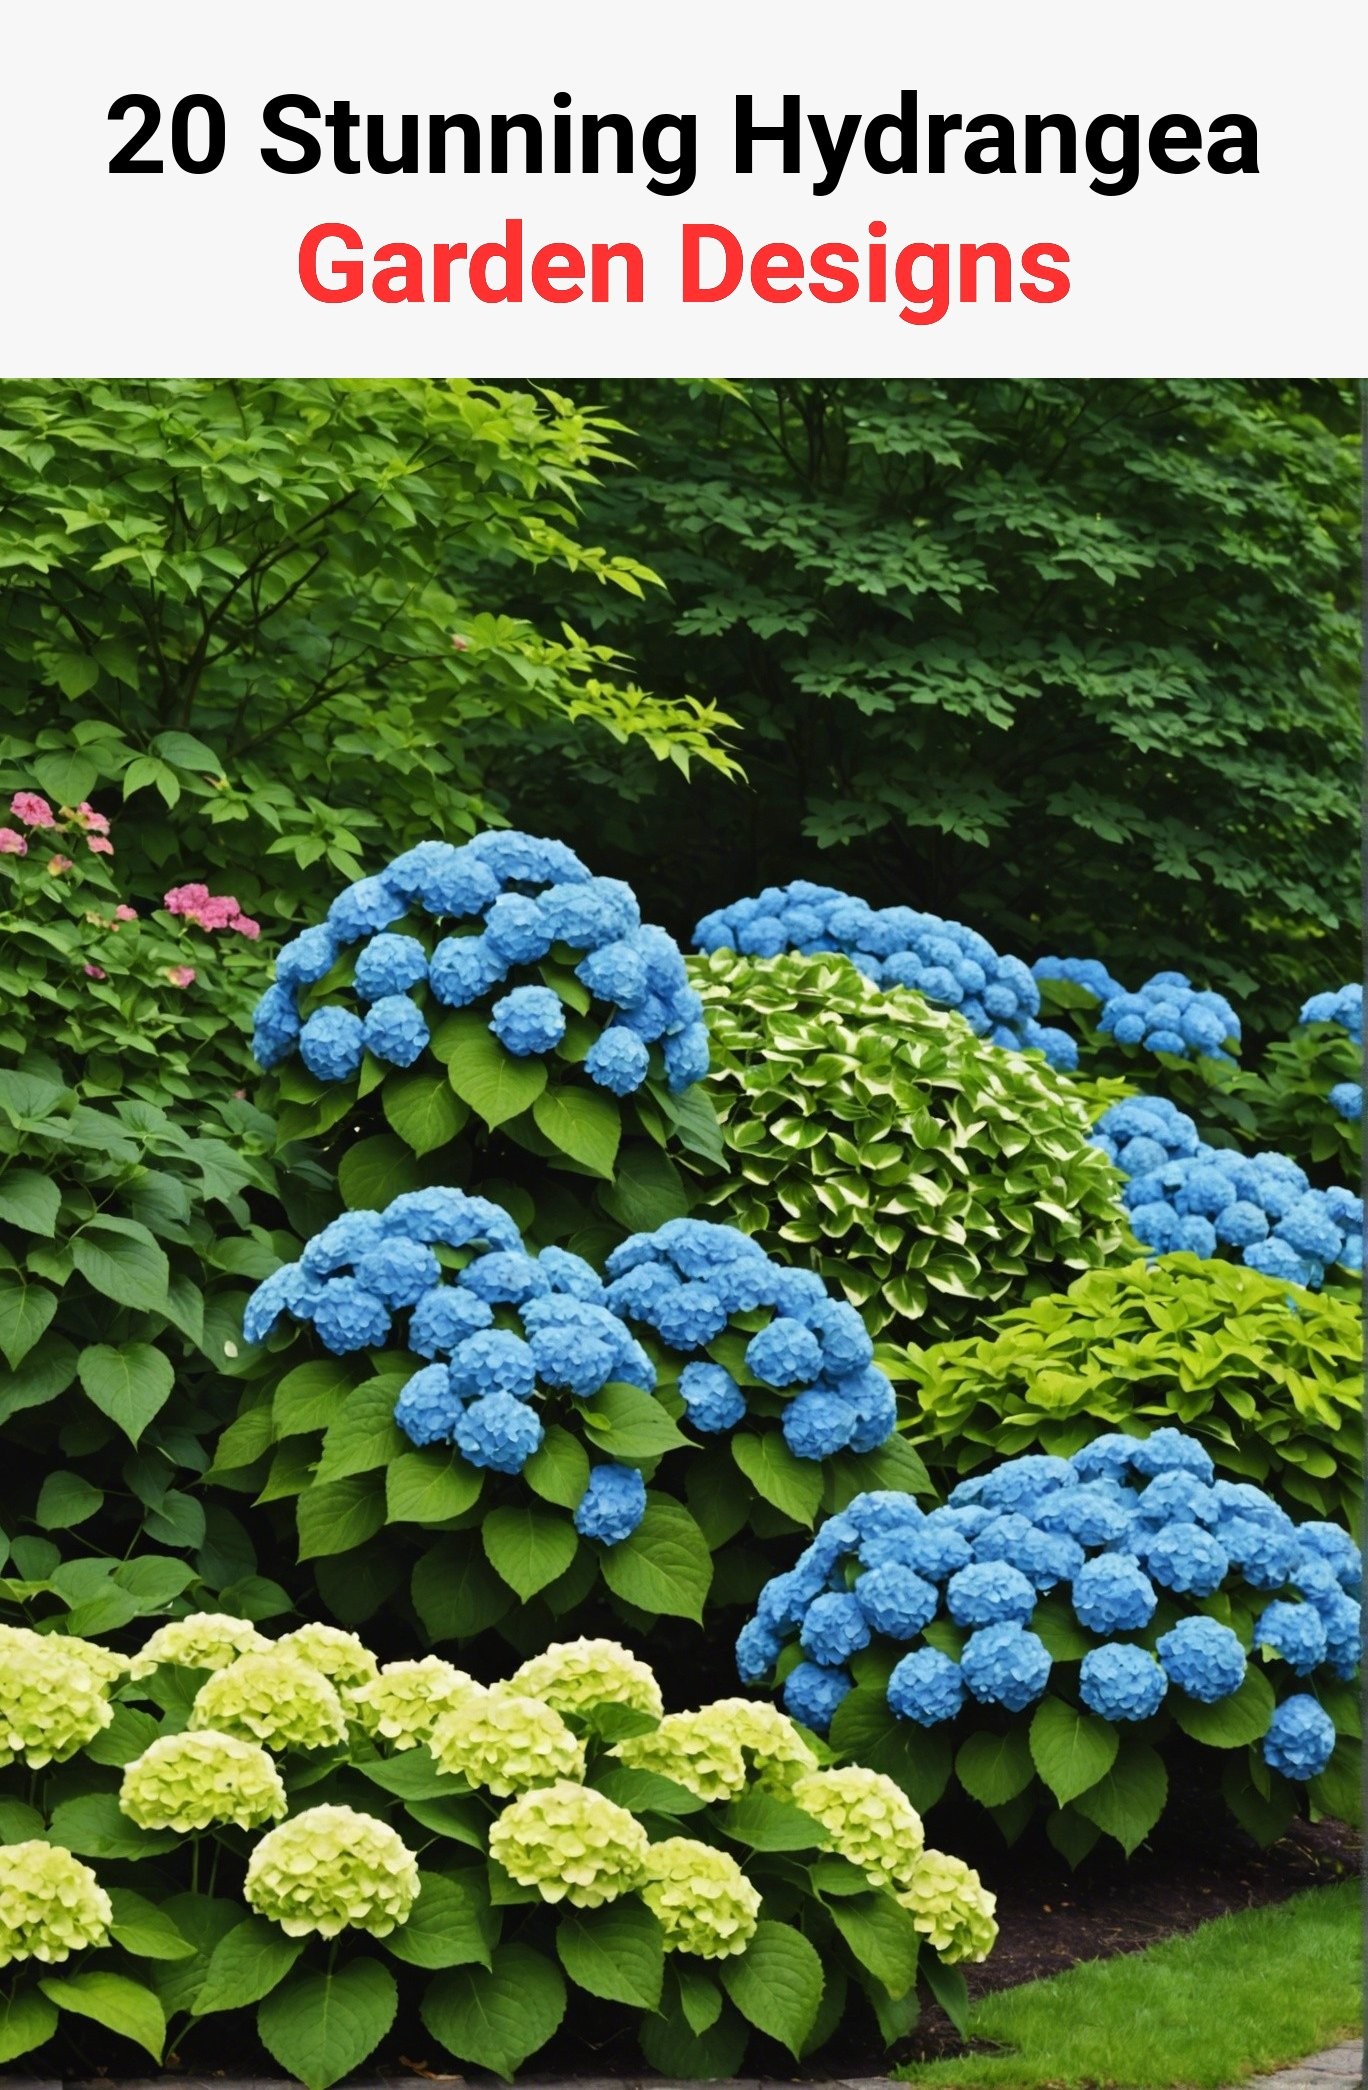 20 Stunning Hydrangea Garden Designs